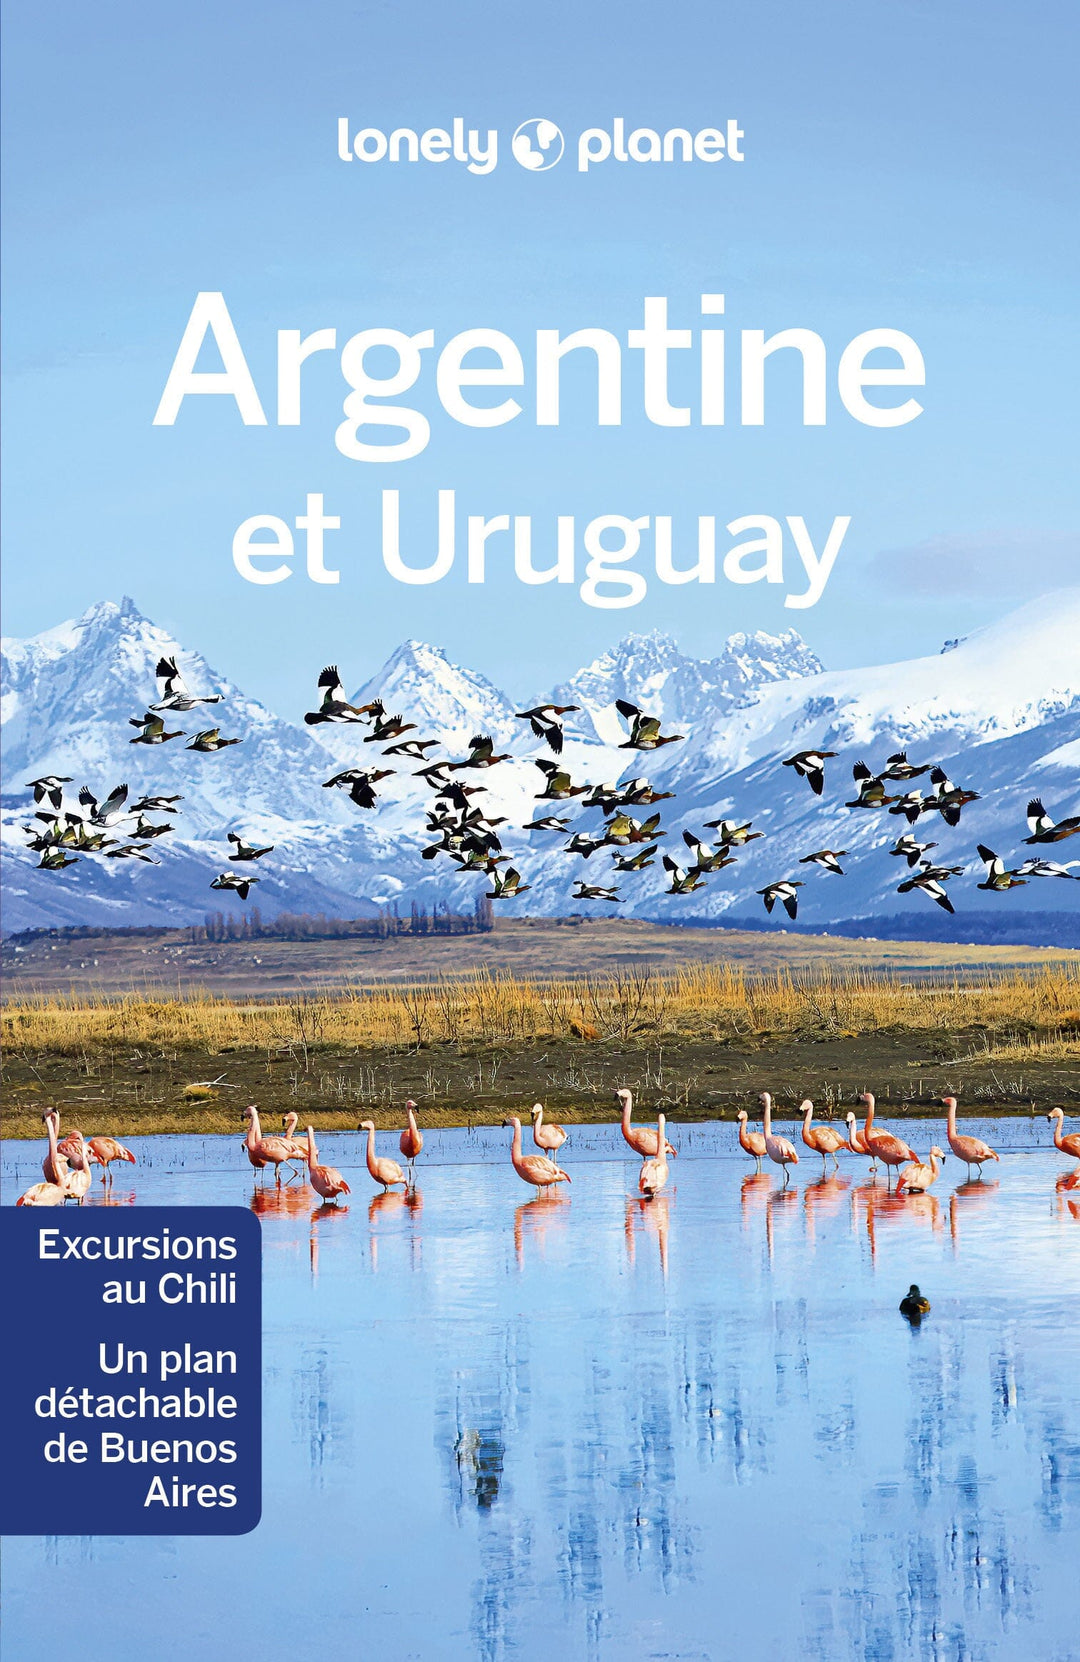 Guide de voyage - Argentine & Uruguay | Lonely Planet guide de voyage Lonely Planet 